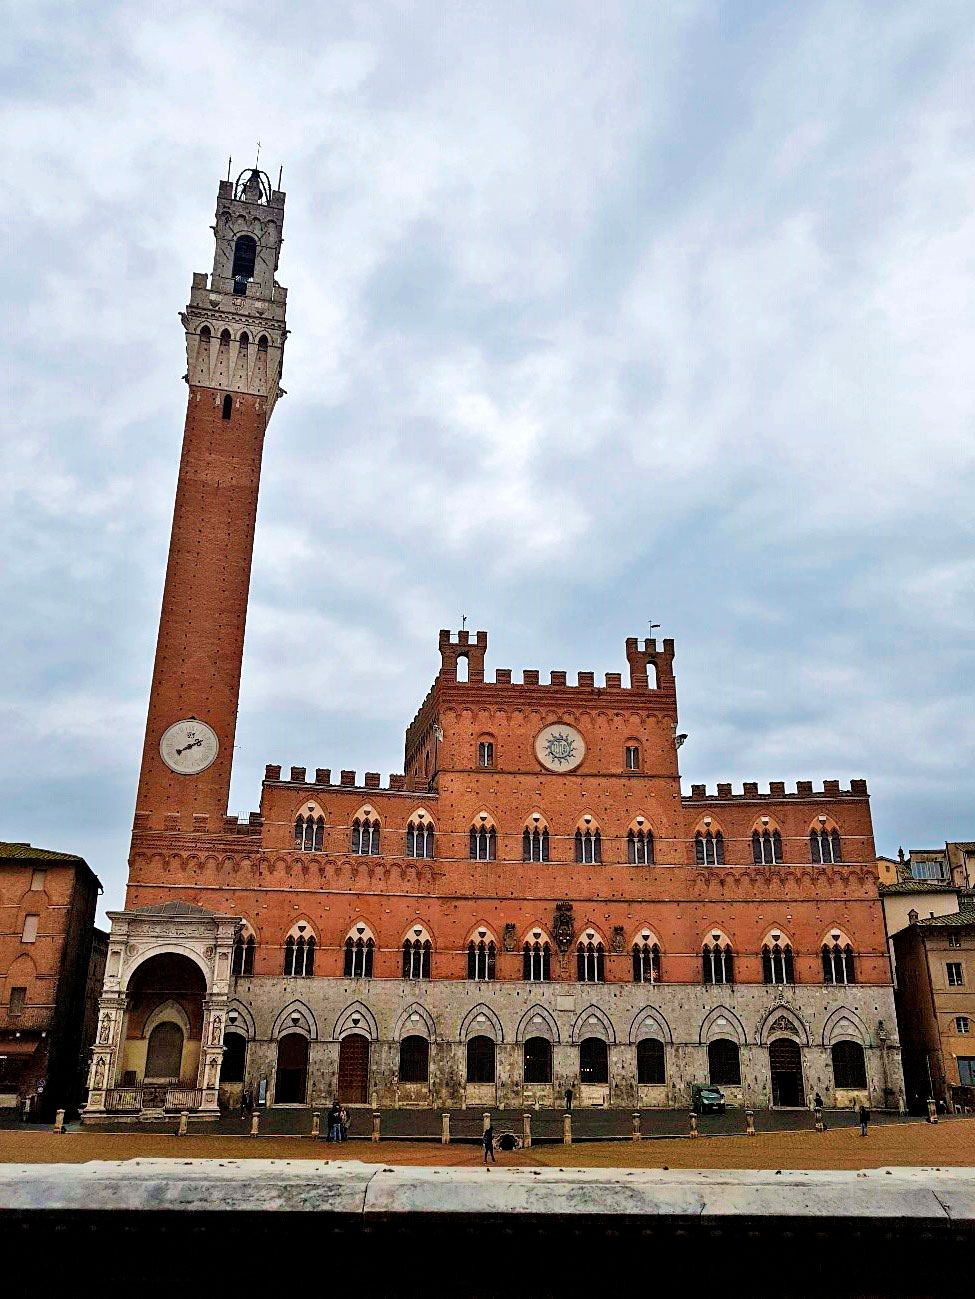 Esse é o imponente Palazzo Publico de Siena